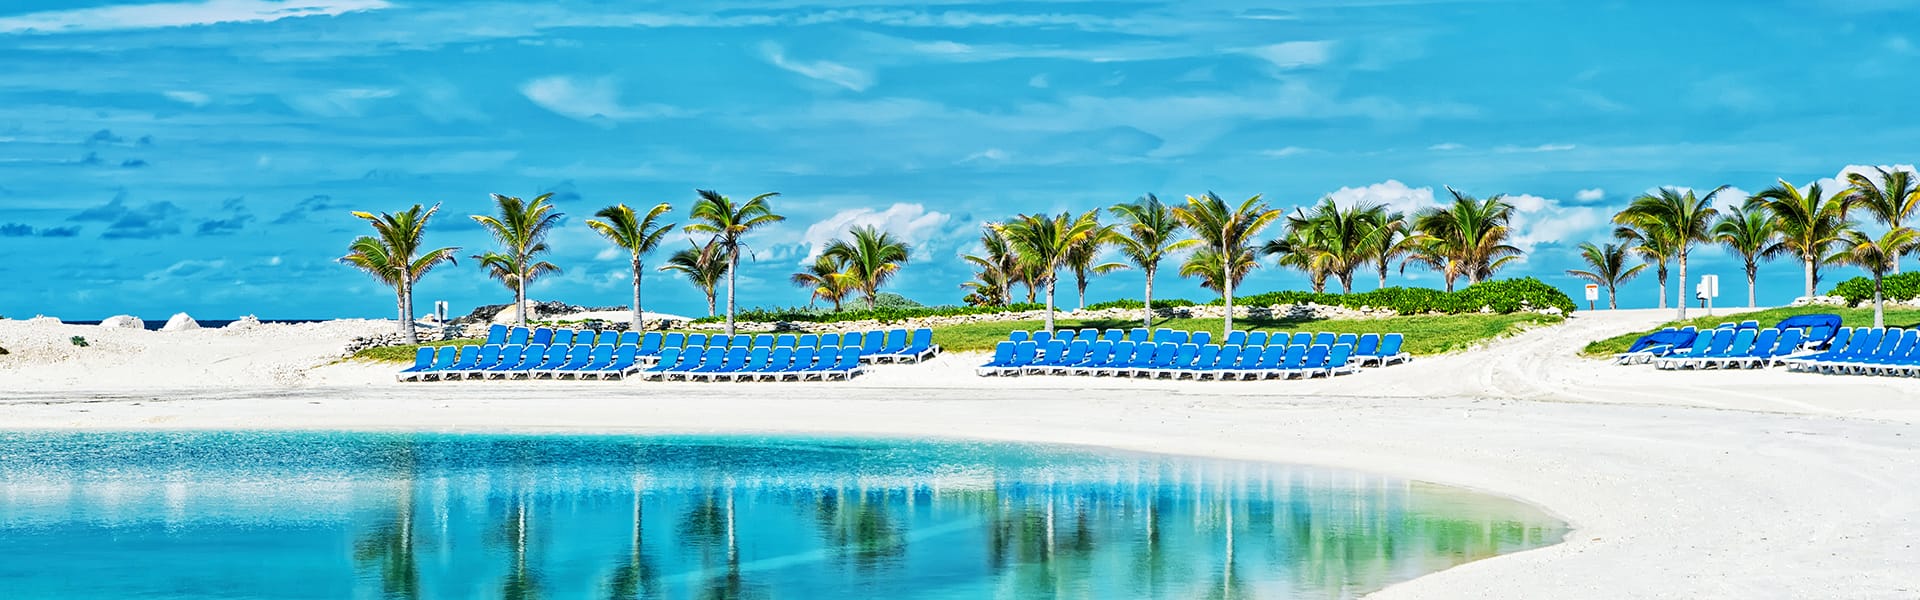 Bahamas : Great Stirrup Cay, Key West et Nassau